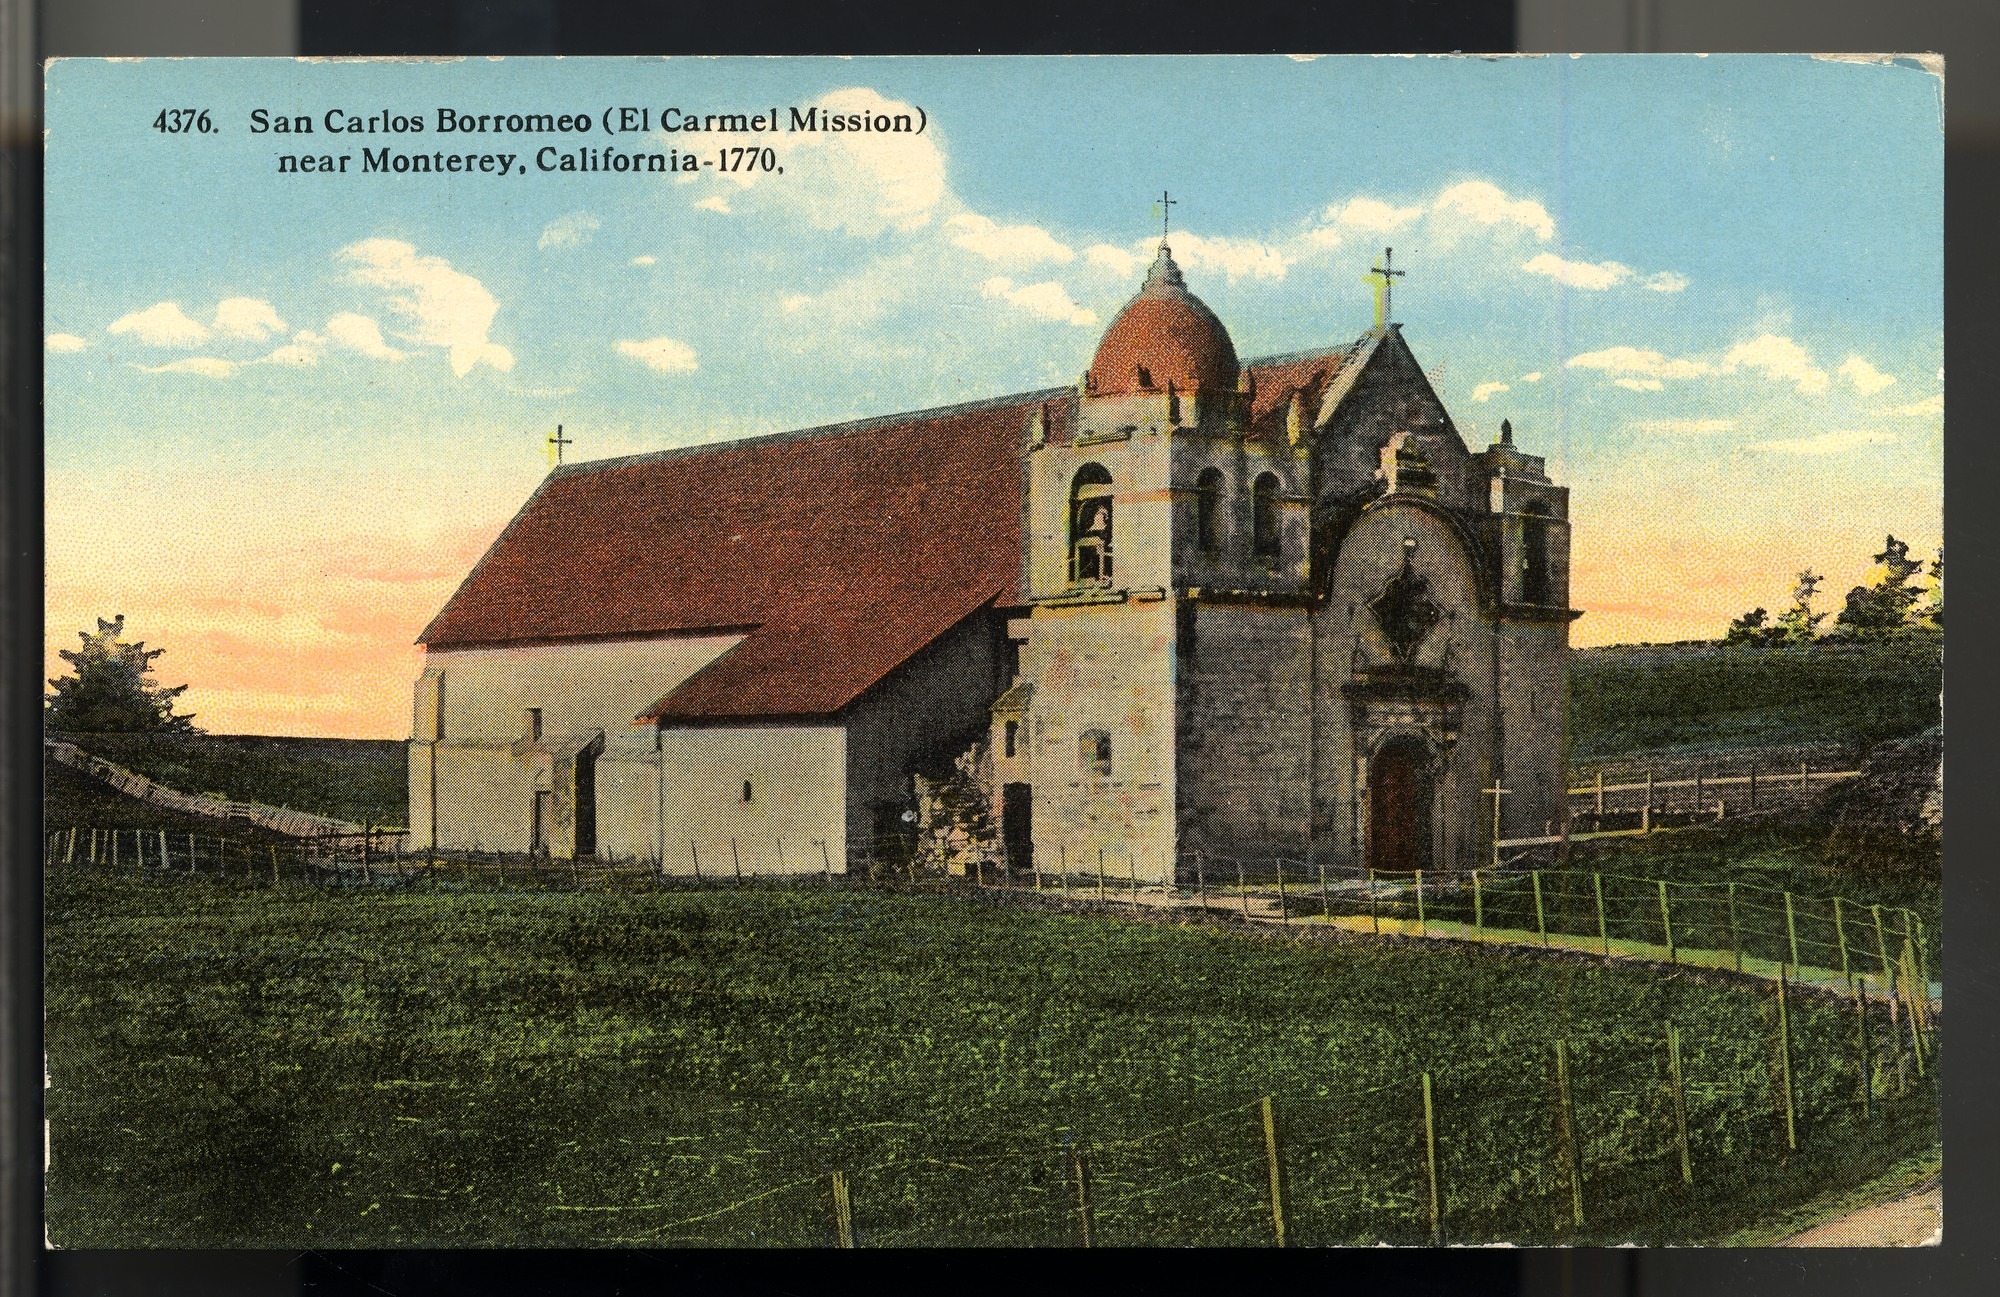 Postcard 07 – San Carlos Borroméo (El Carmel Mission) near Monterey, California – 1770. I. L. Eno Company. Curt Teich Company. ca 1914. NMAH 1986.0639.0331.